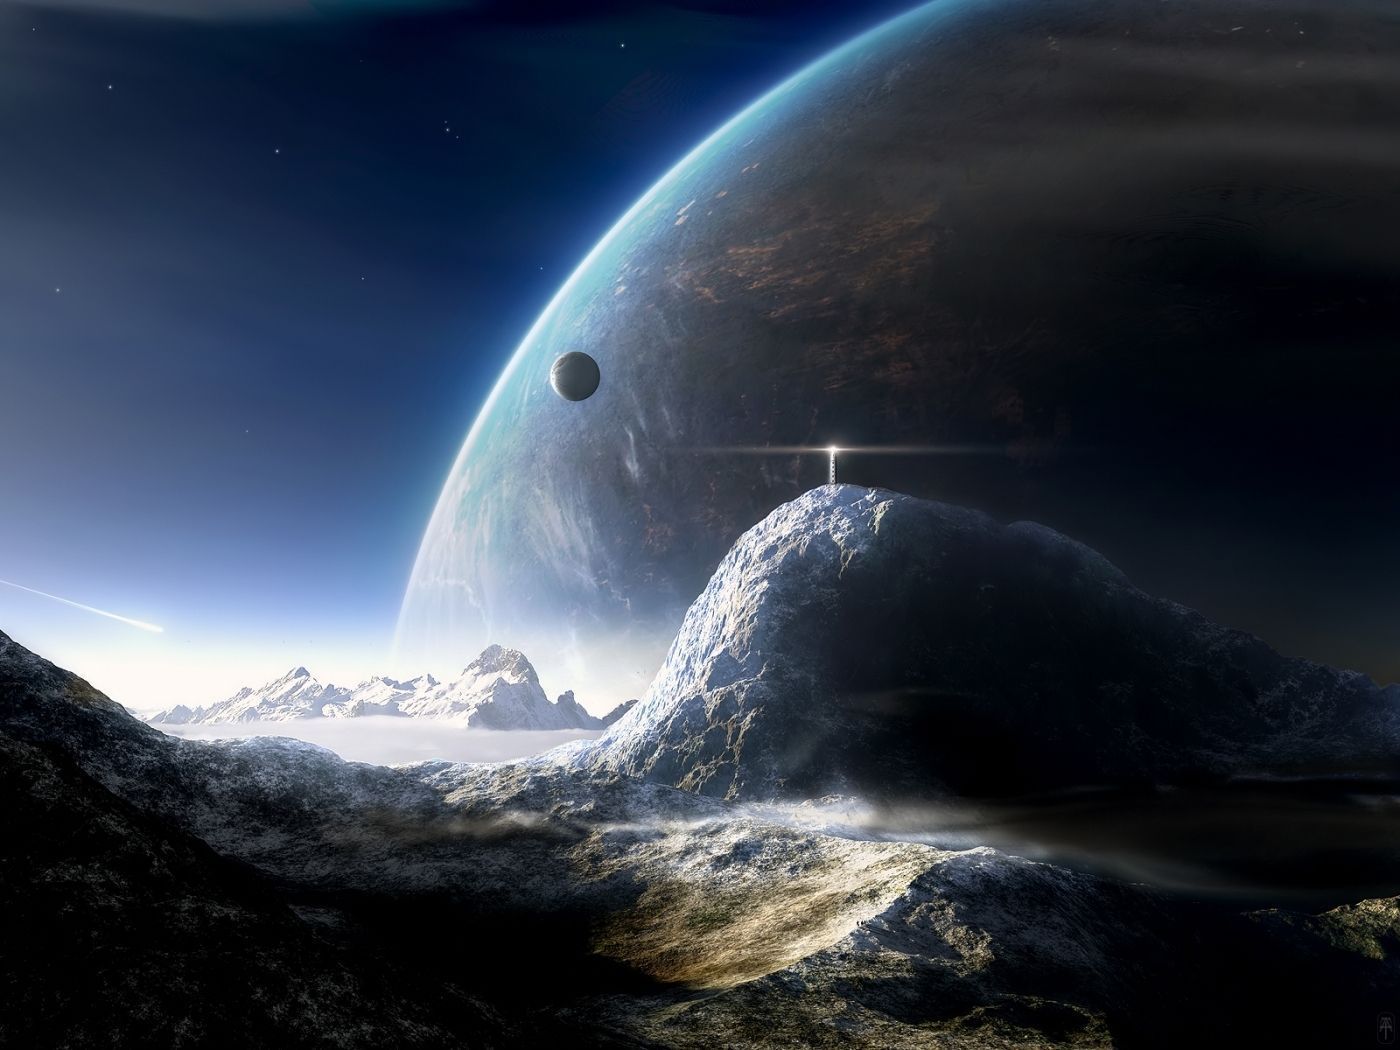  Beste Der Welt Hintergrundbild 1400x1050. Hintergrundbild für Handys: Universum, Planets, Fantasie, 38365 Bild kostenlos herunterladen